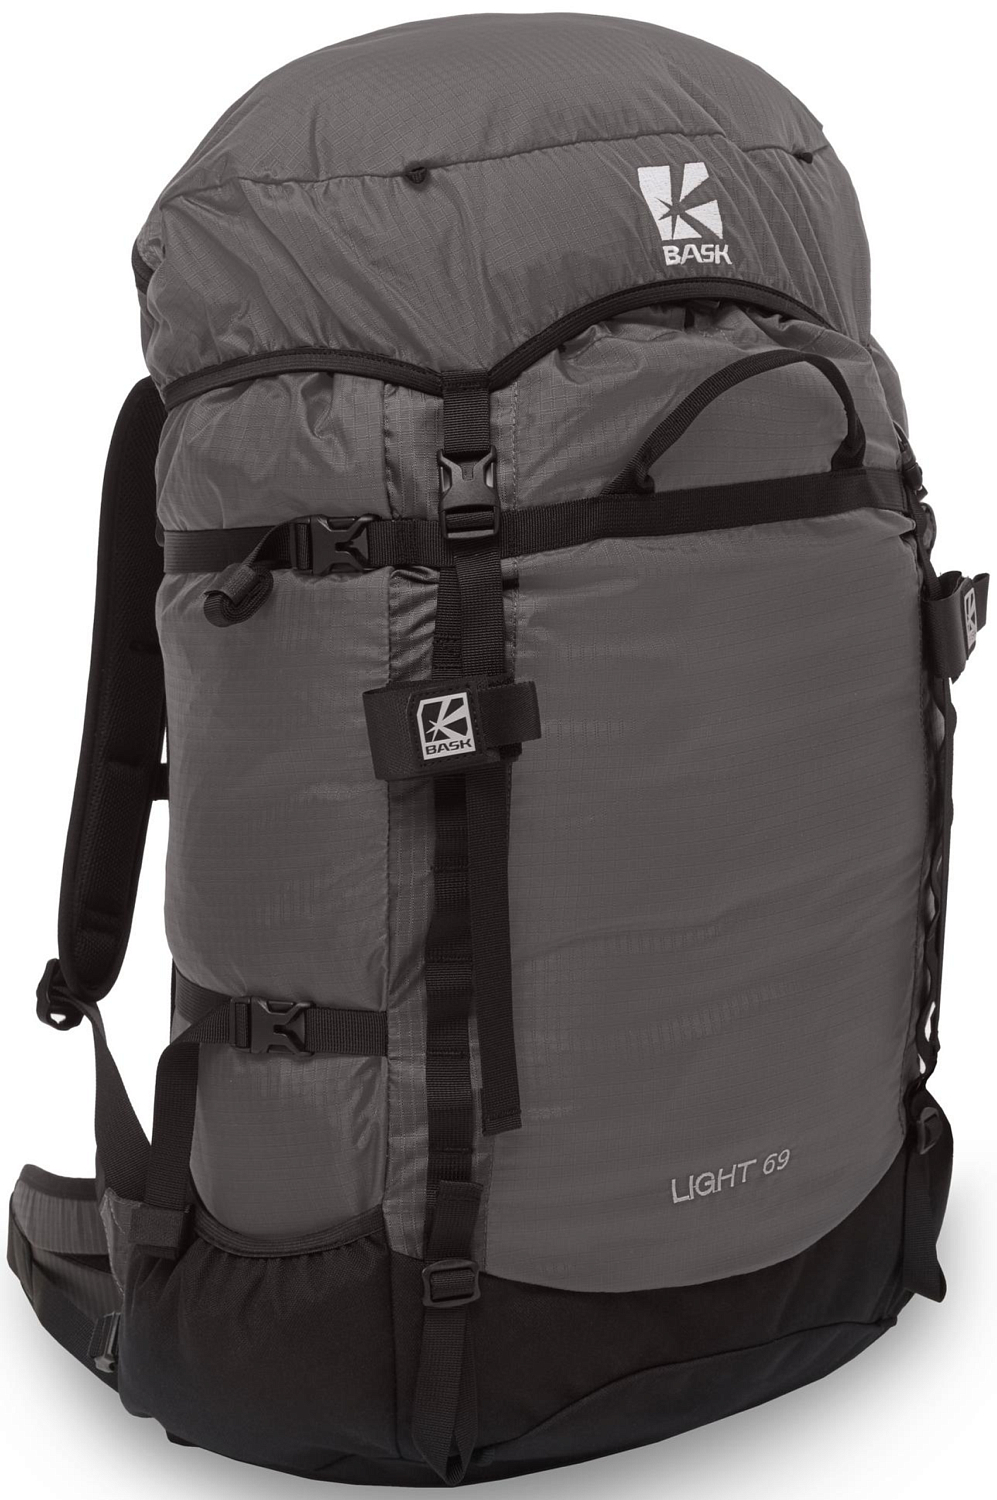 Рюкзак BASK Light 69 серый/светло-серый